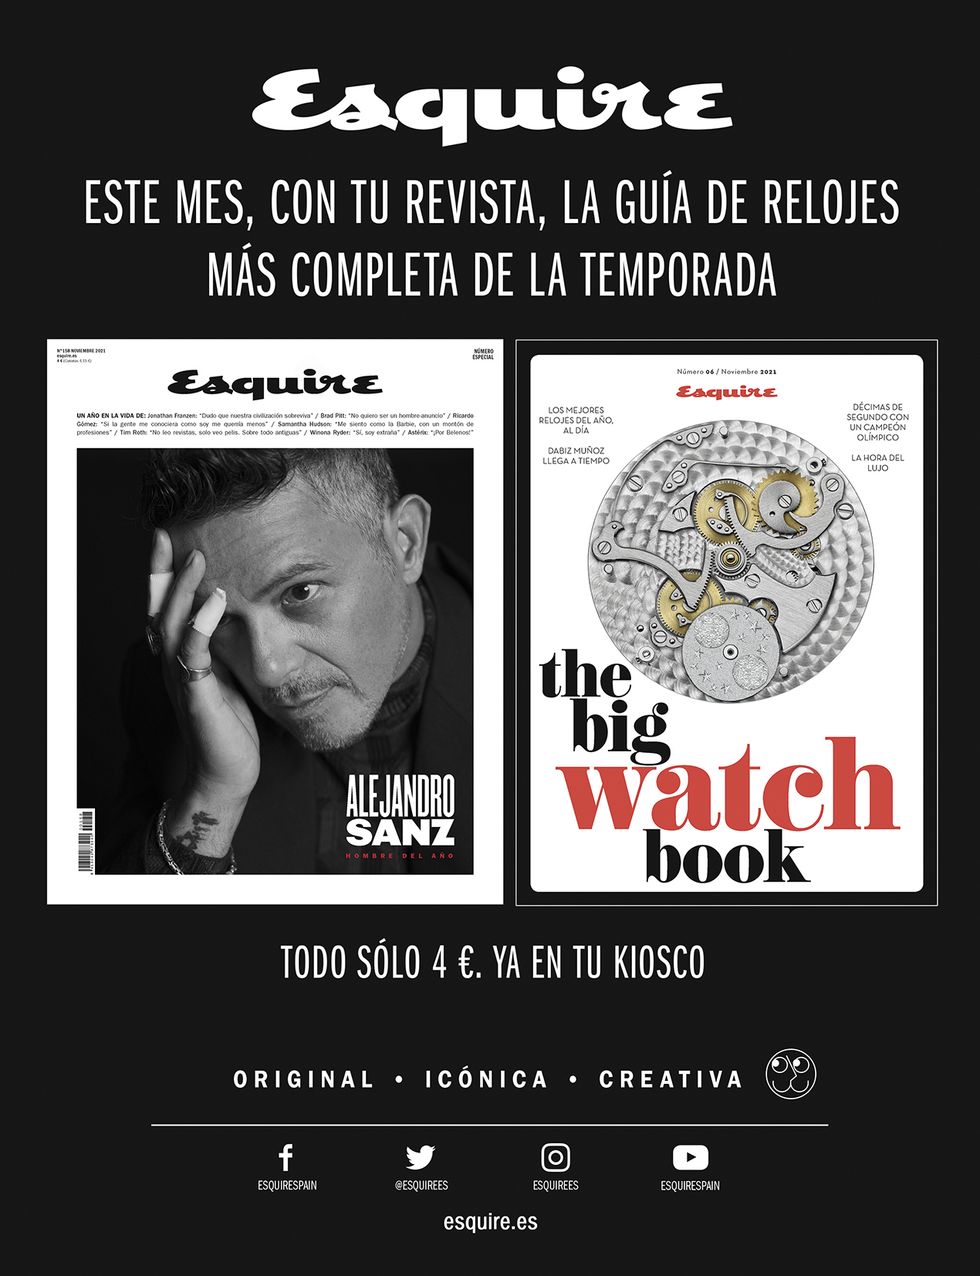 portada del big watch book de esquire